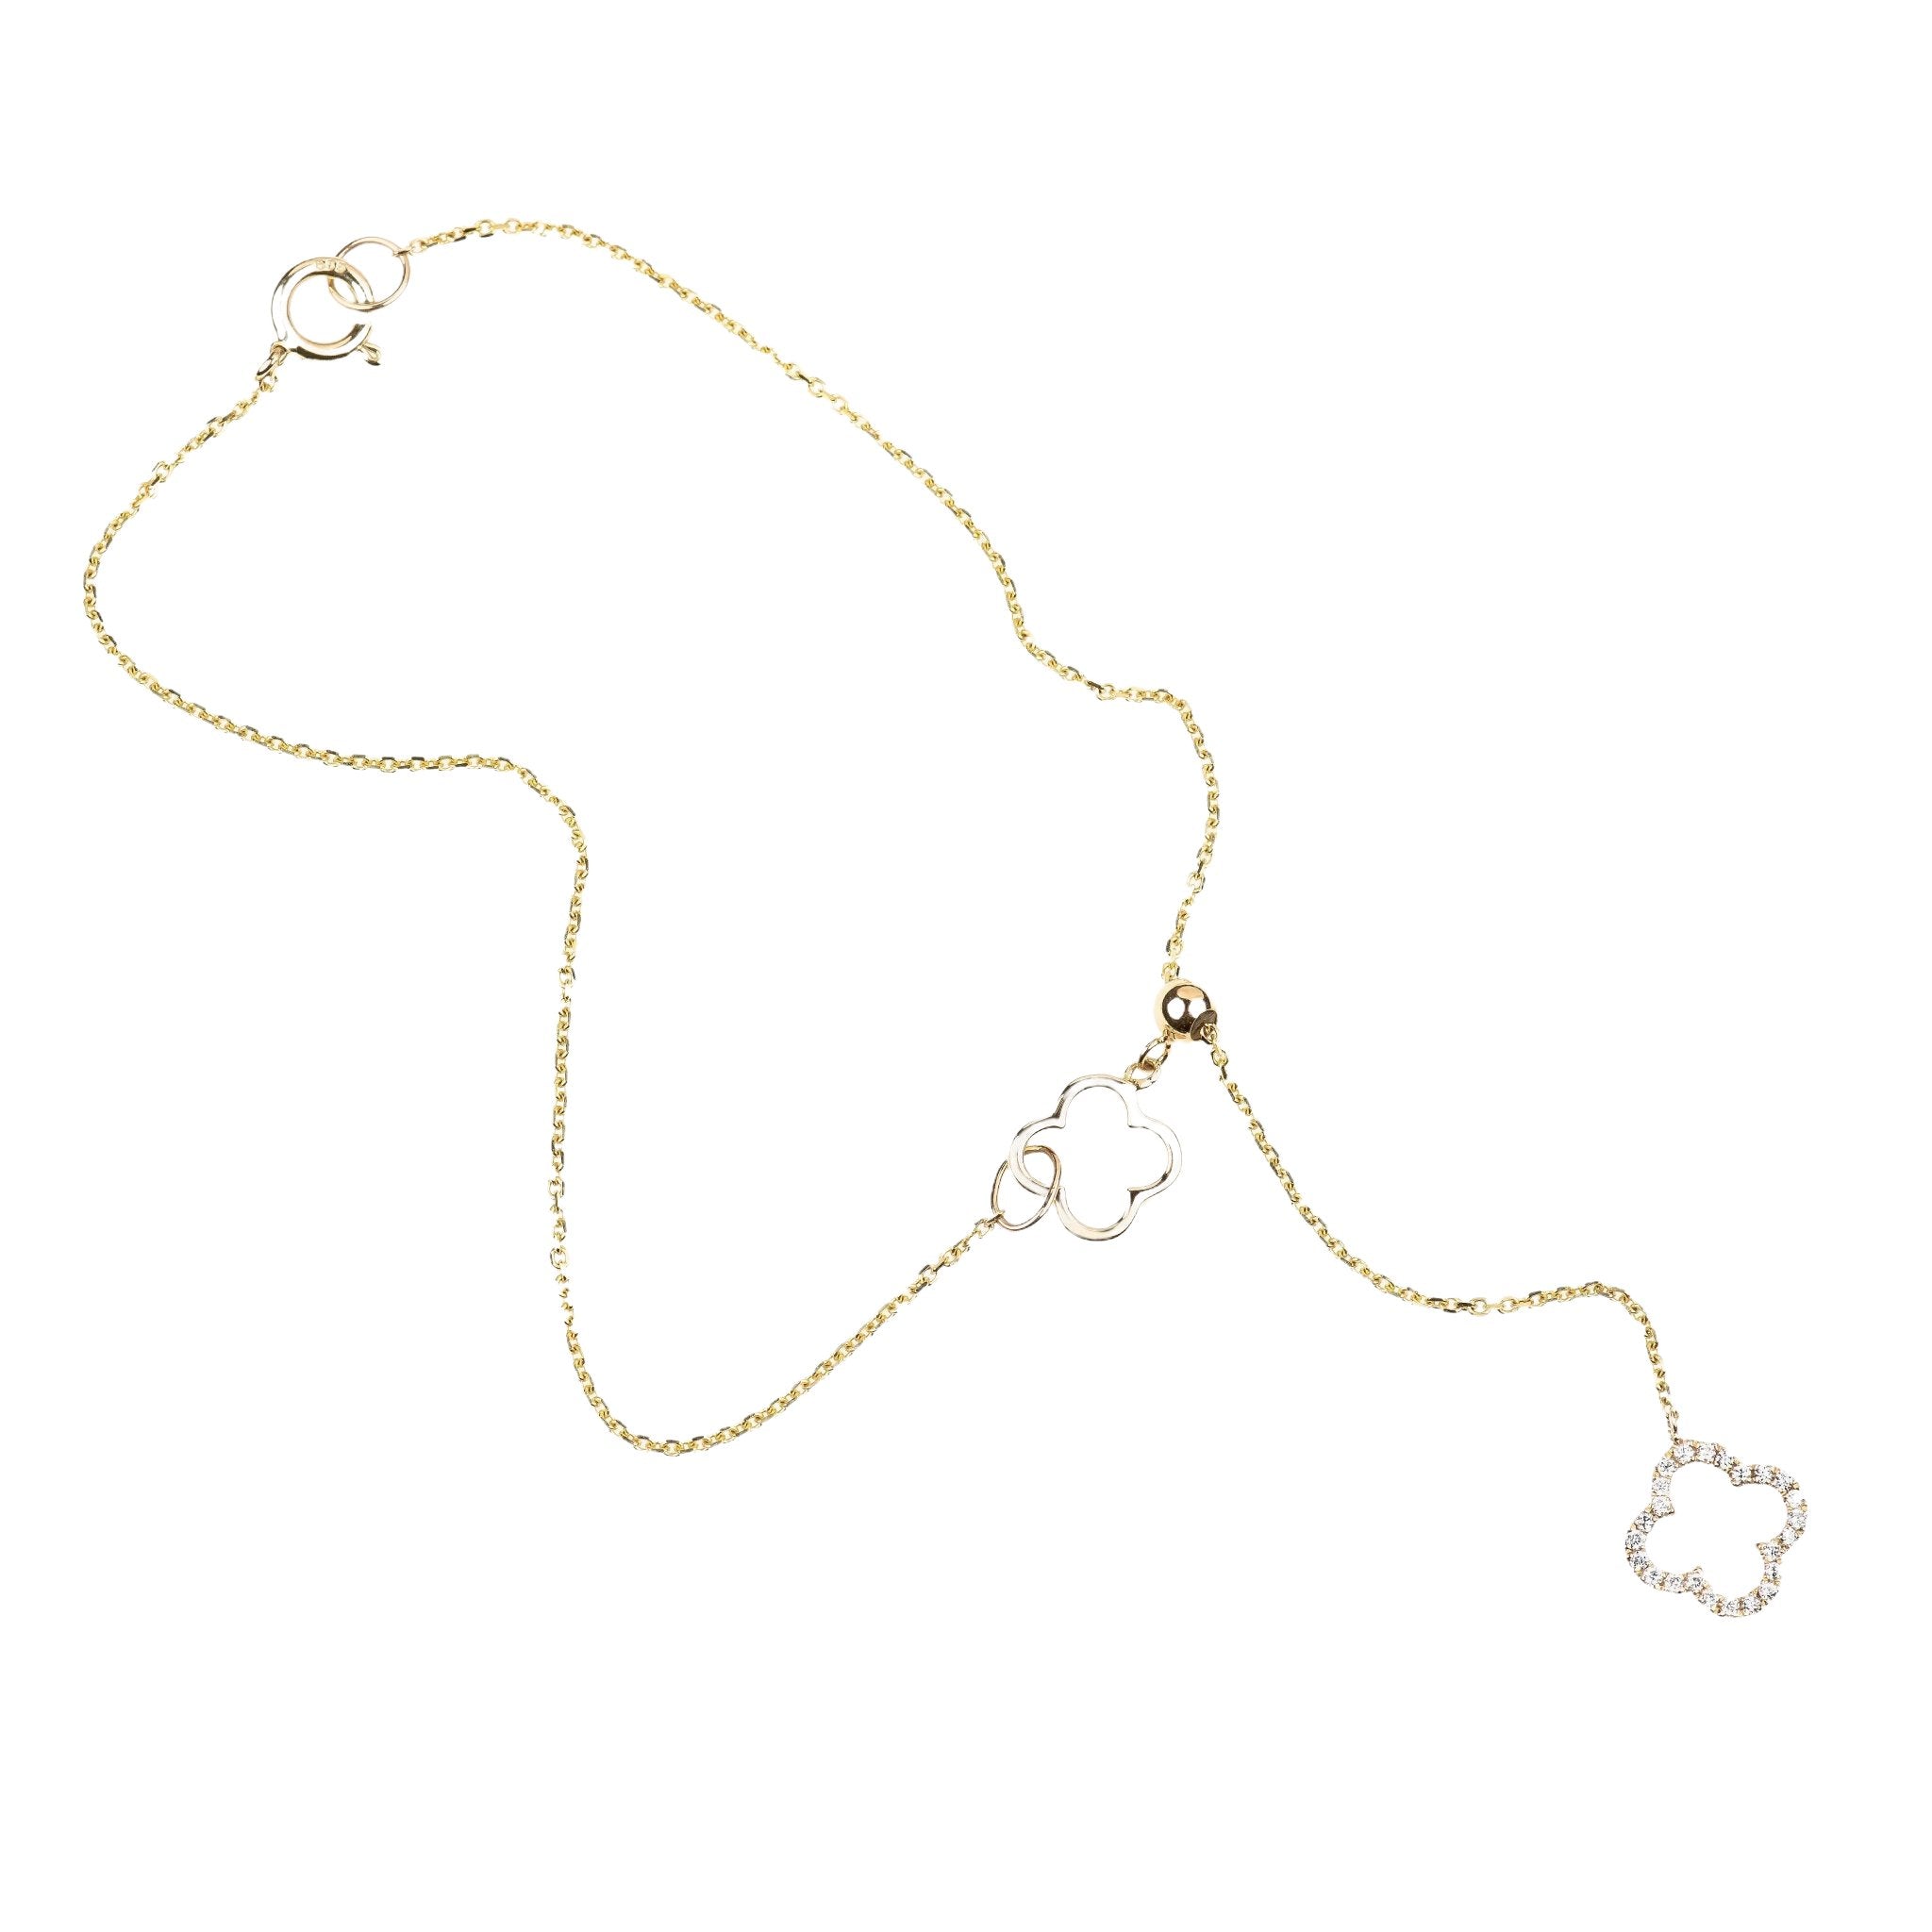 Diamond Clover Lariat Bolo Bracelet Bracelets Estella Collection #product_description# 17125 14k Birthstone Birthstone Jewelry #tag4# #tag5# #tag6# #tag7# #tag8# #tag9# #tag10#